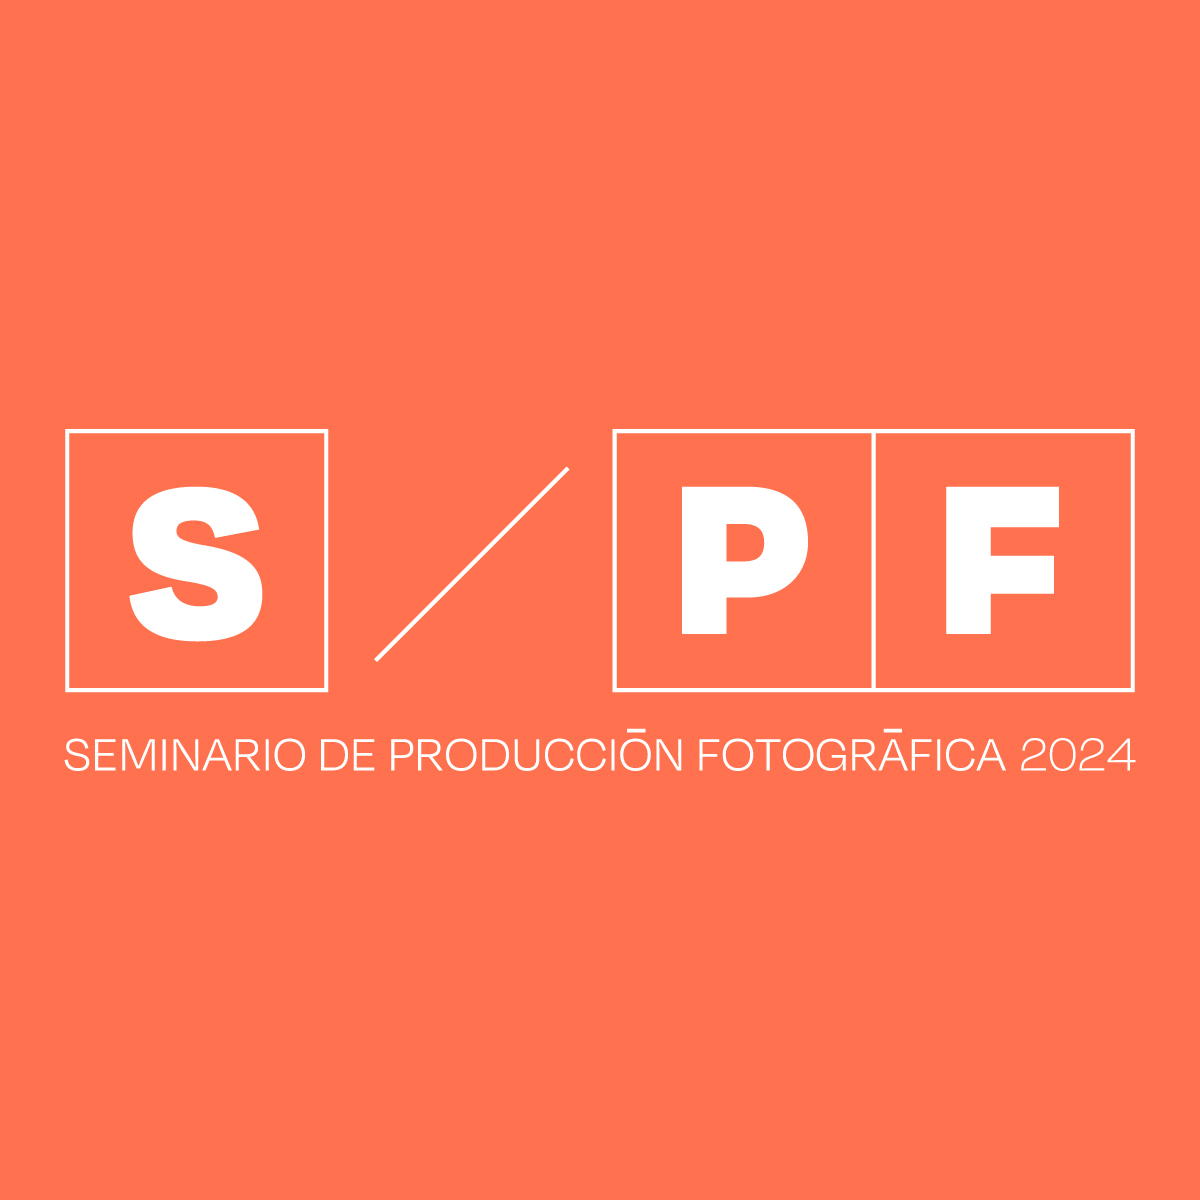 Sesión informativa sobre el Seminario de Producción Fotográfica 2024